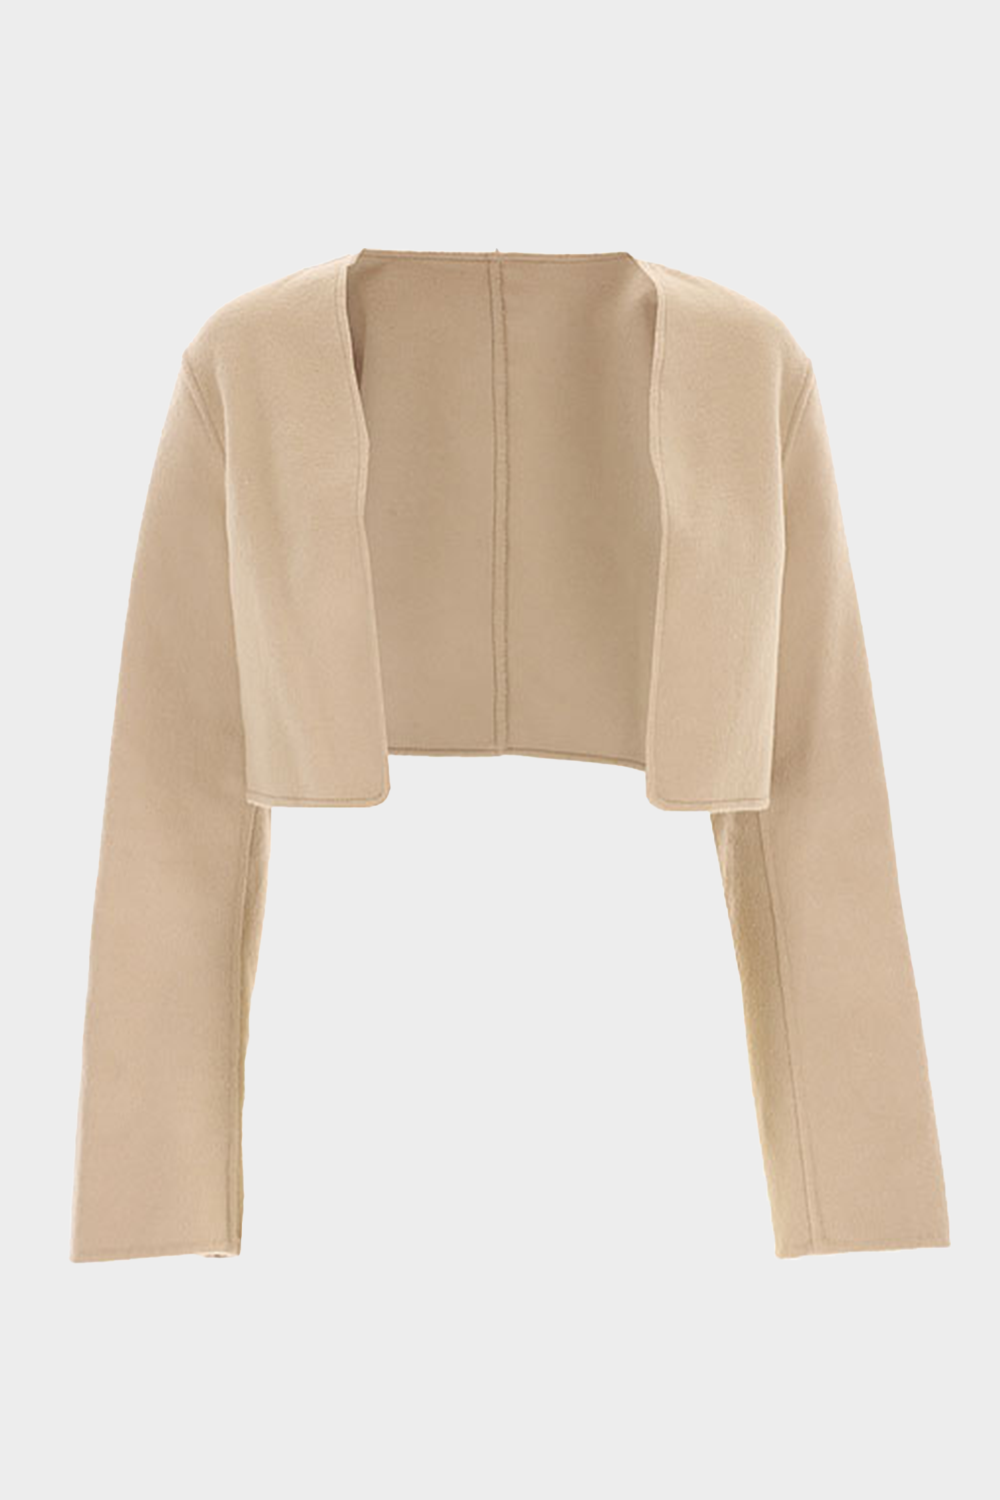 מעיל טרנץ' ארוך לנשים בצבע בז KARL LAGERFELD Vendome online | ונדום .